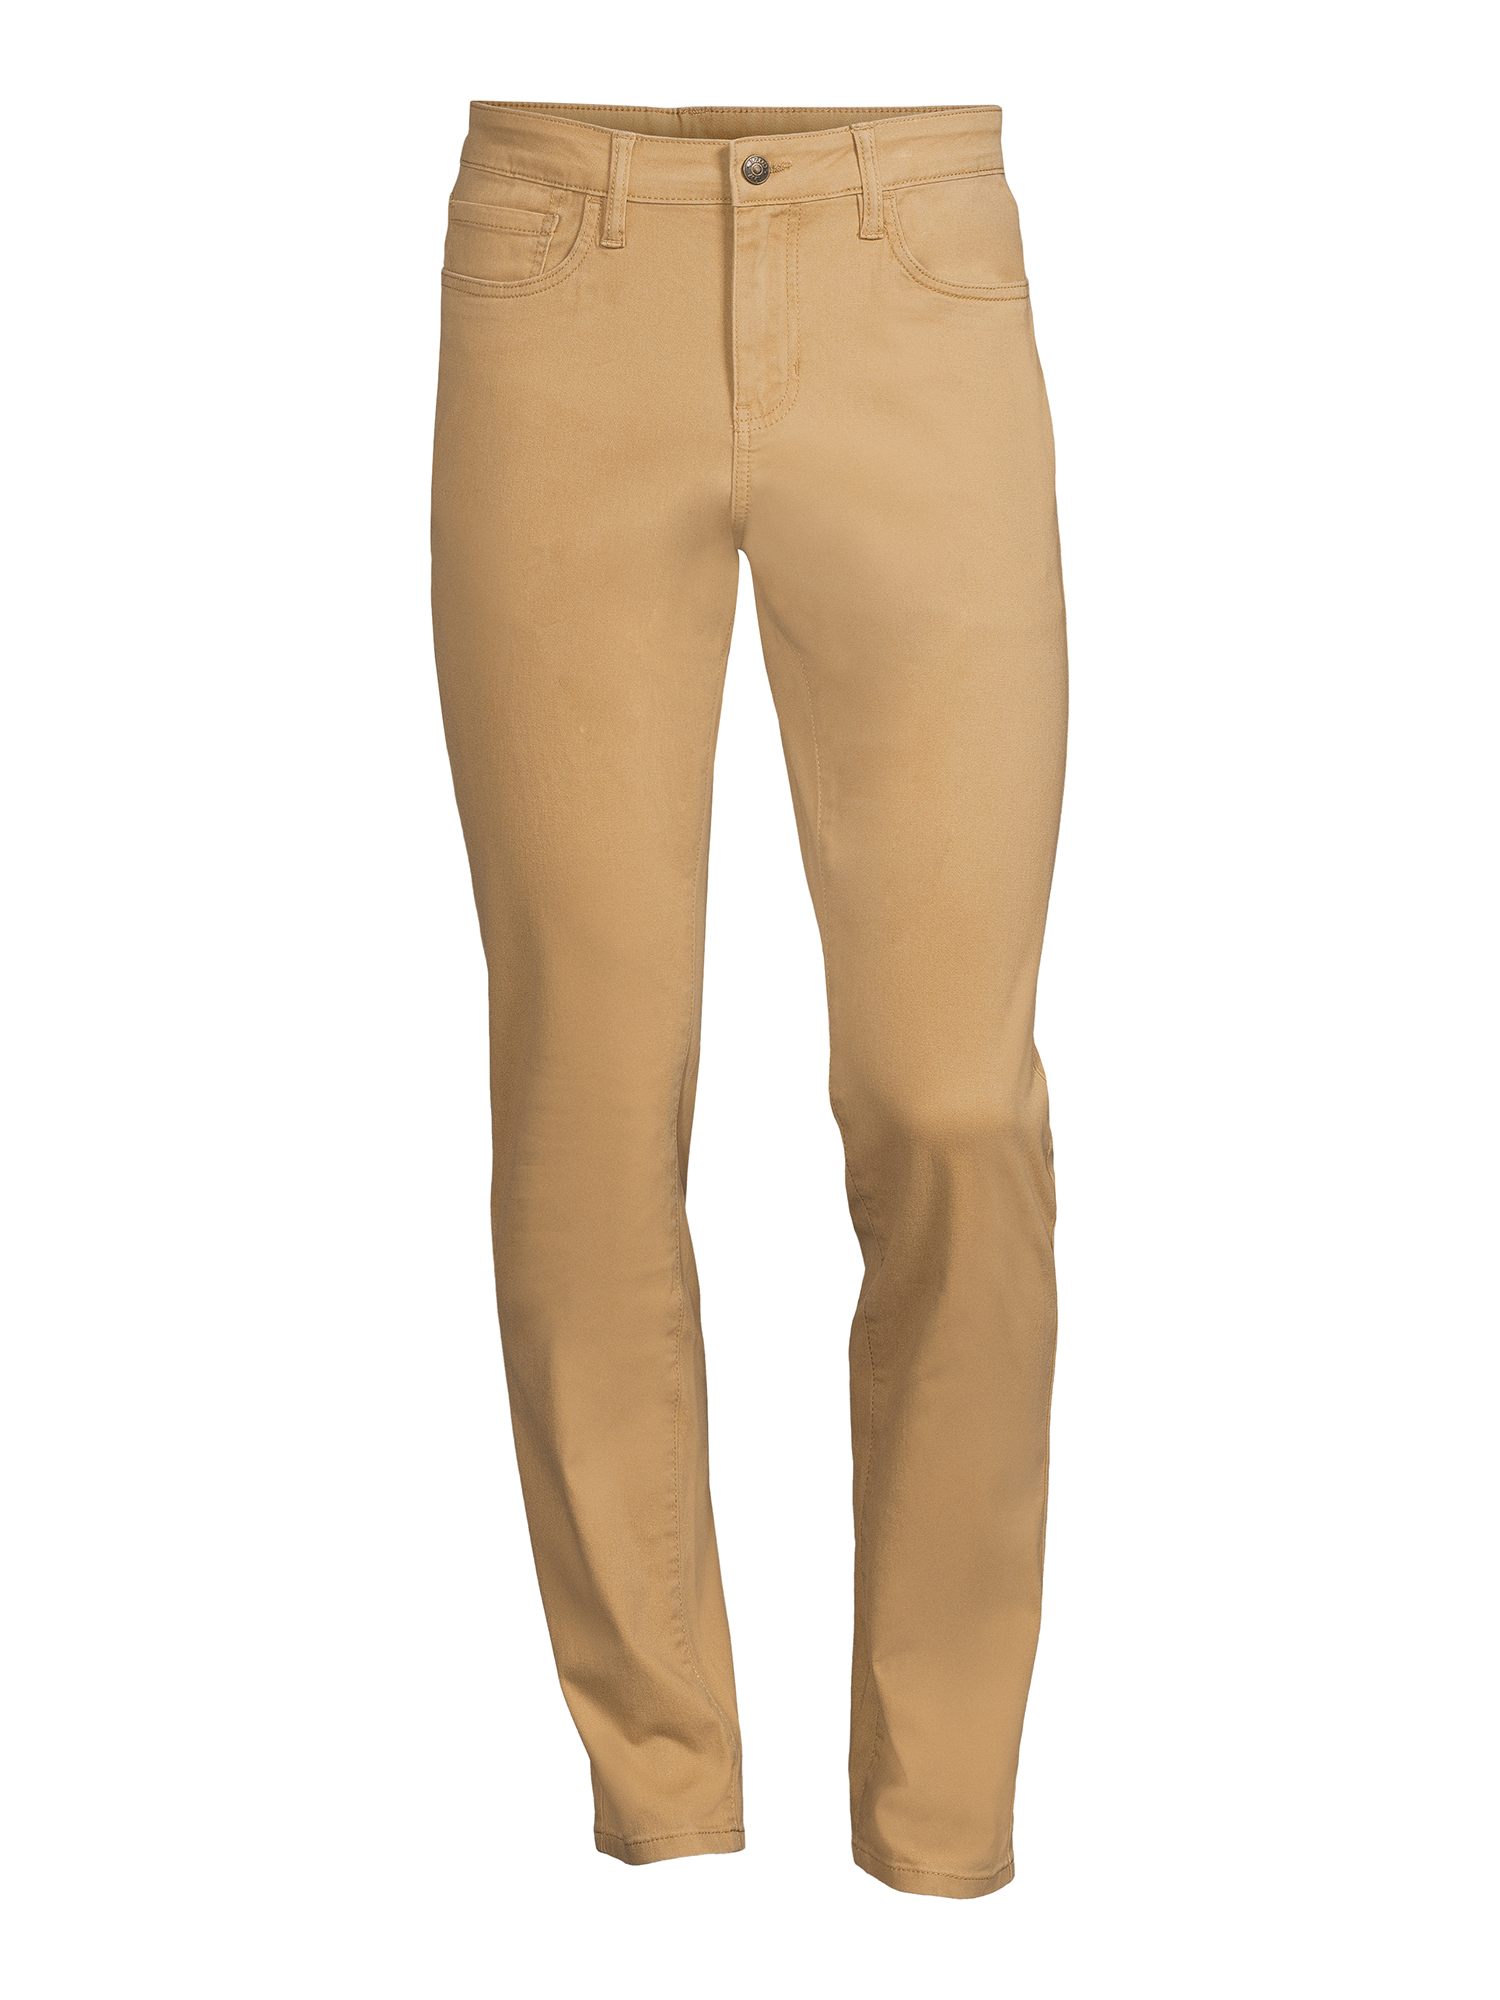 IZOD Men’s Twill Slim Fit Pants (Khaki,Navy) $19.98 + Free S&H w ...